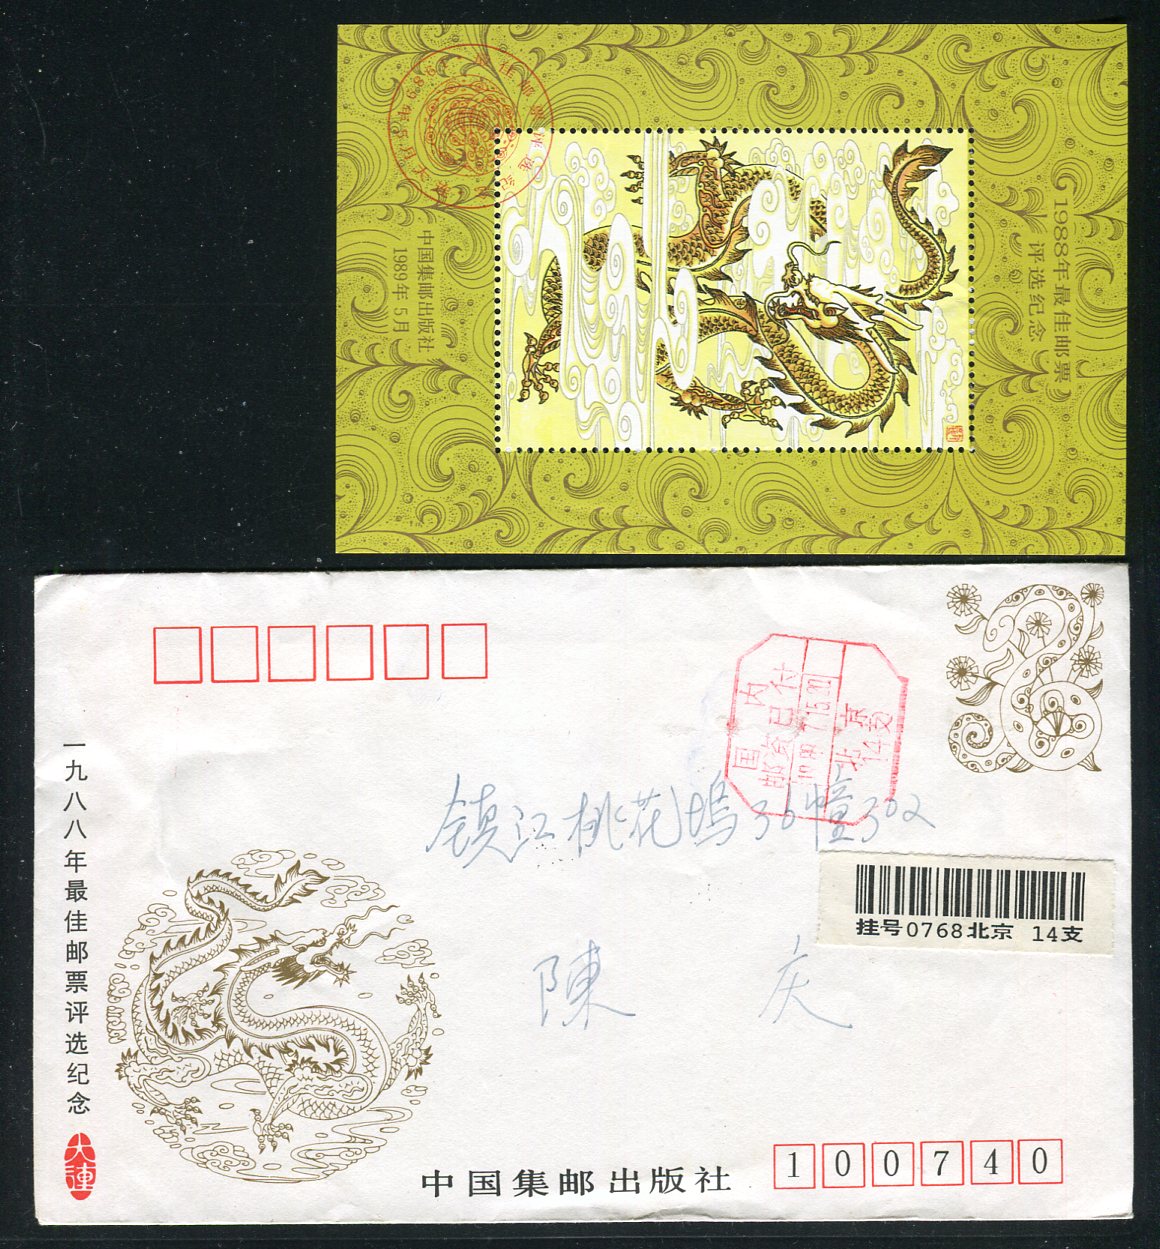 最佳邮票评选纪念张(1992年最佳邮票评选纪念张)